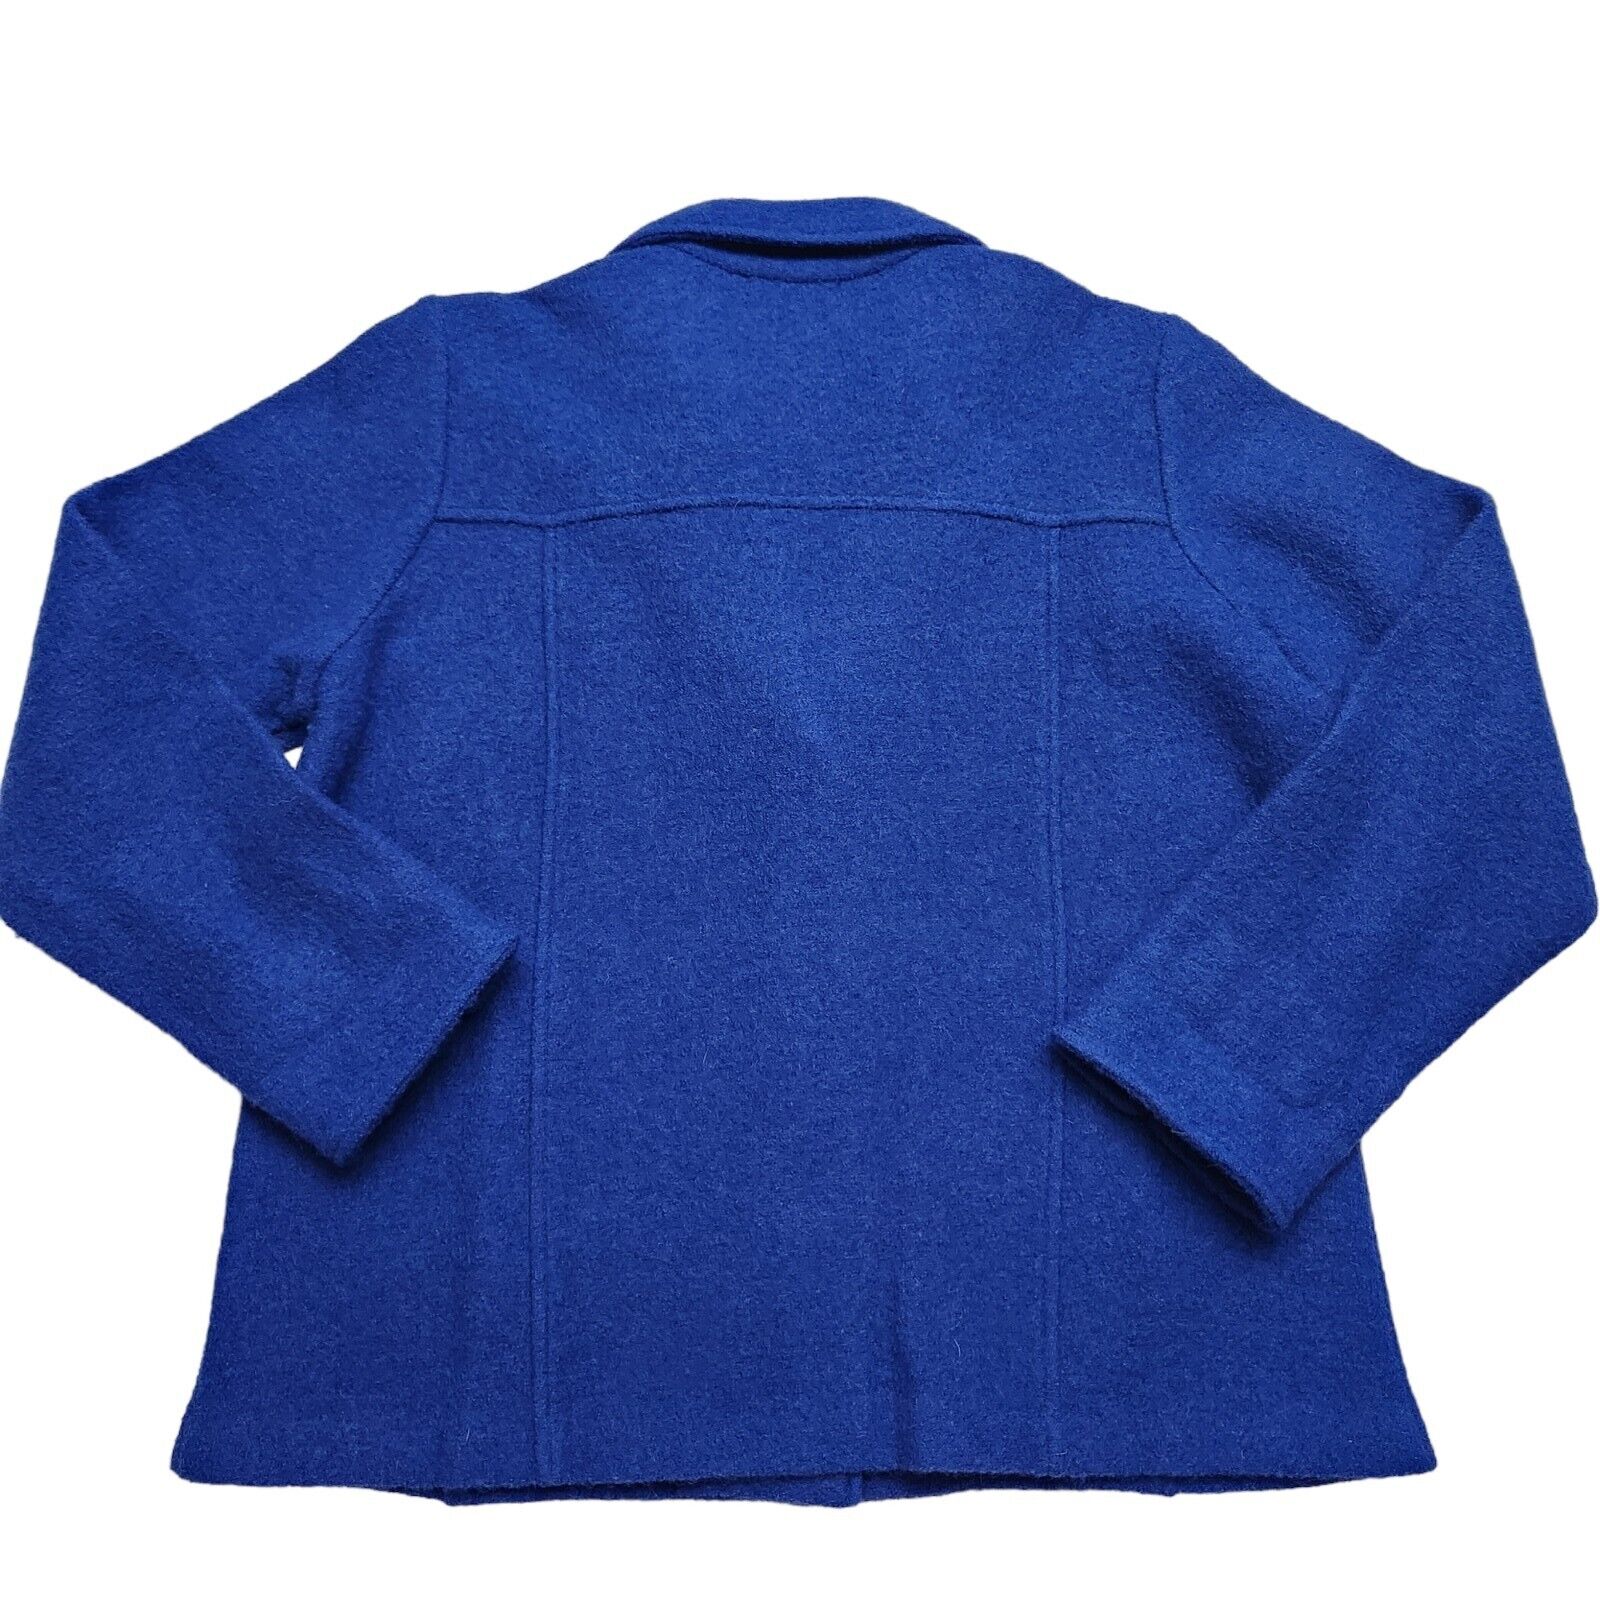 Norm Thompson Boiled Wool Jacket Coat Cardigan Sw… - image 6